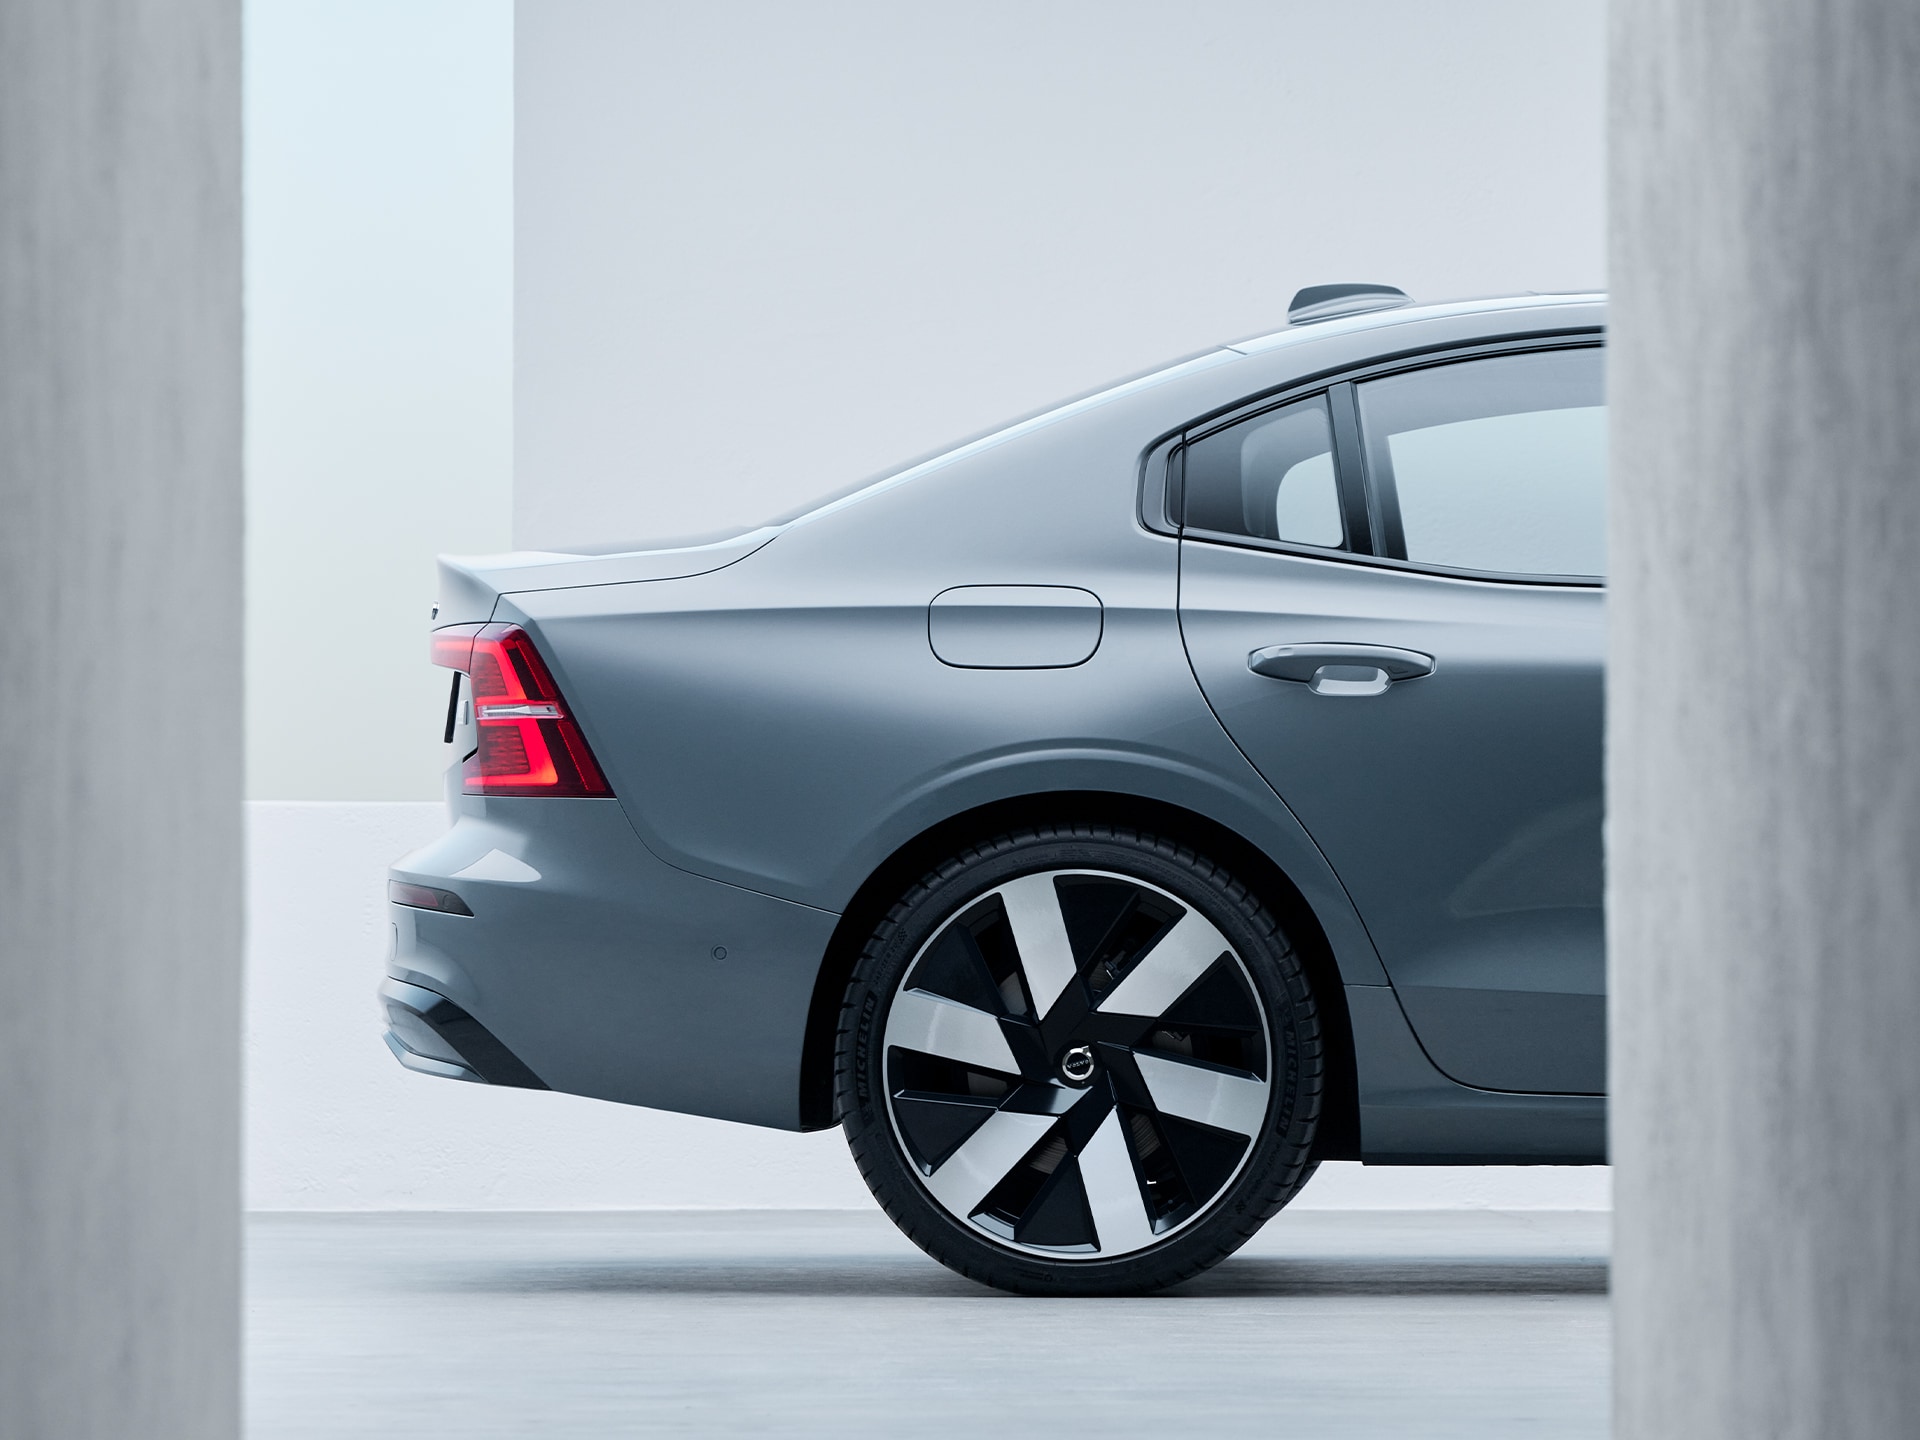 Novo design aerodinâmico dar rodas no Volvo S60 Recharge.